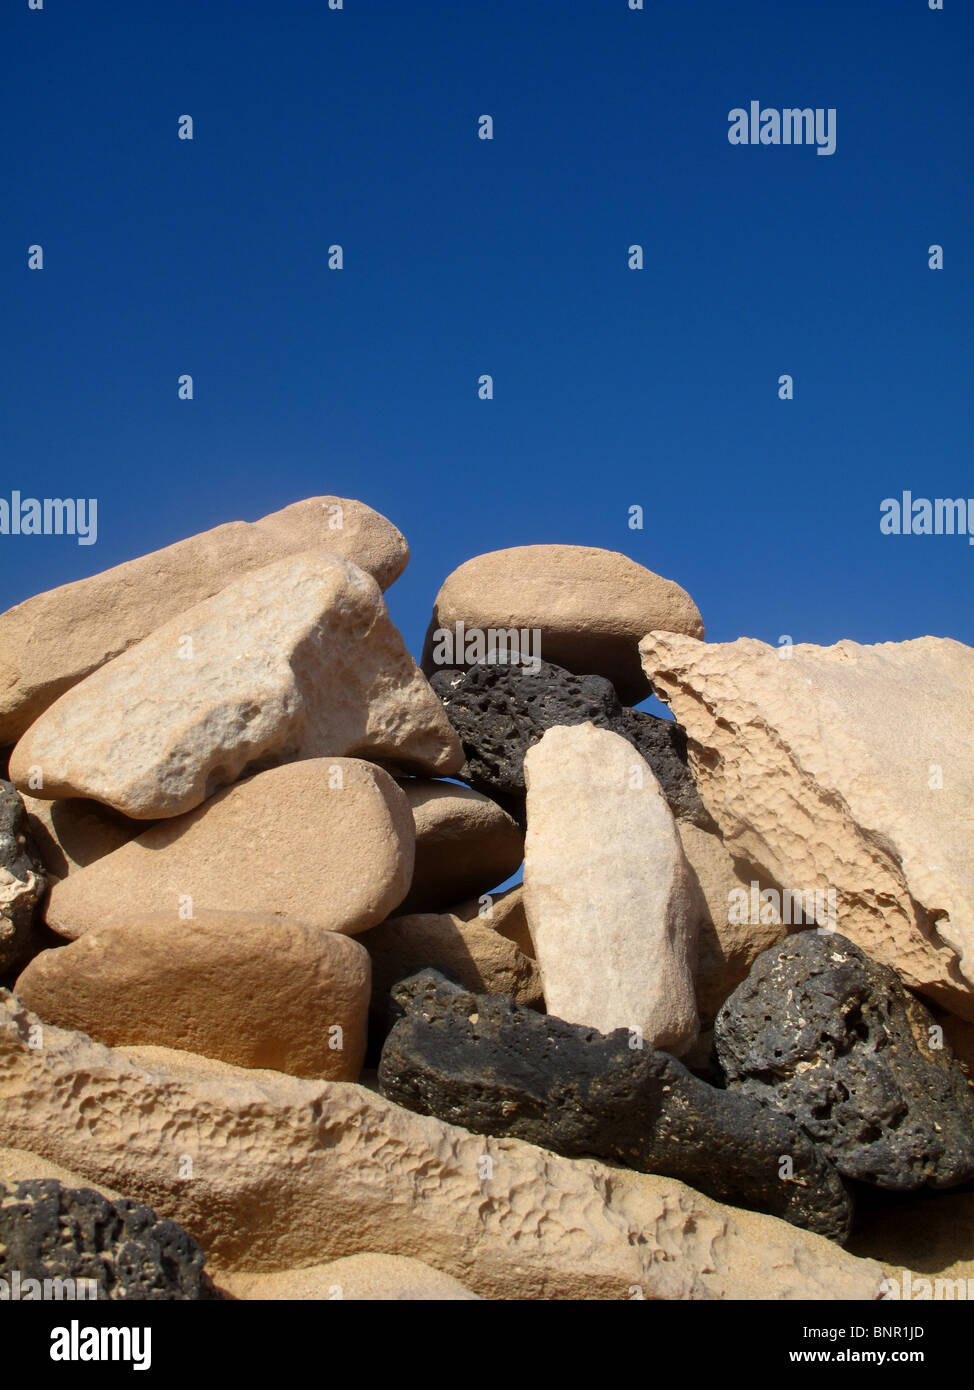 Mur de pierre contre ciel bleu profond Banque D'Images